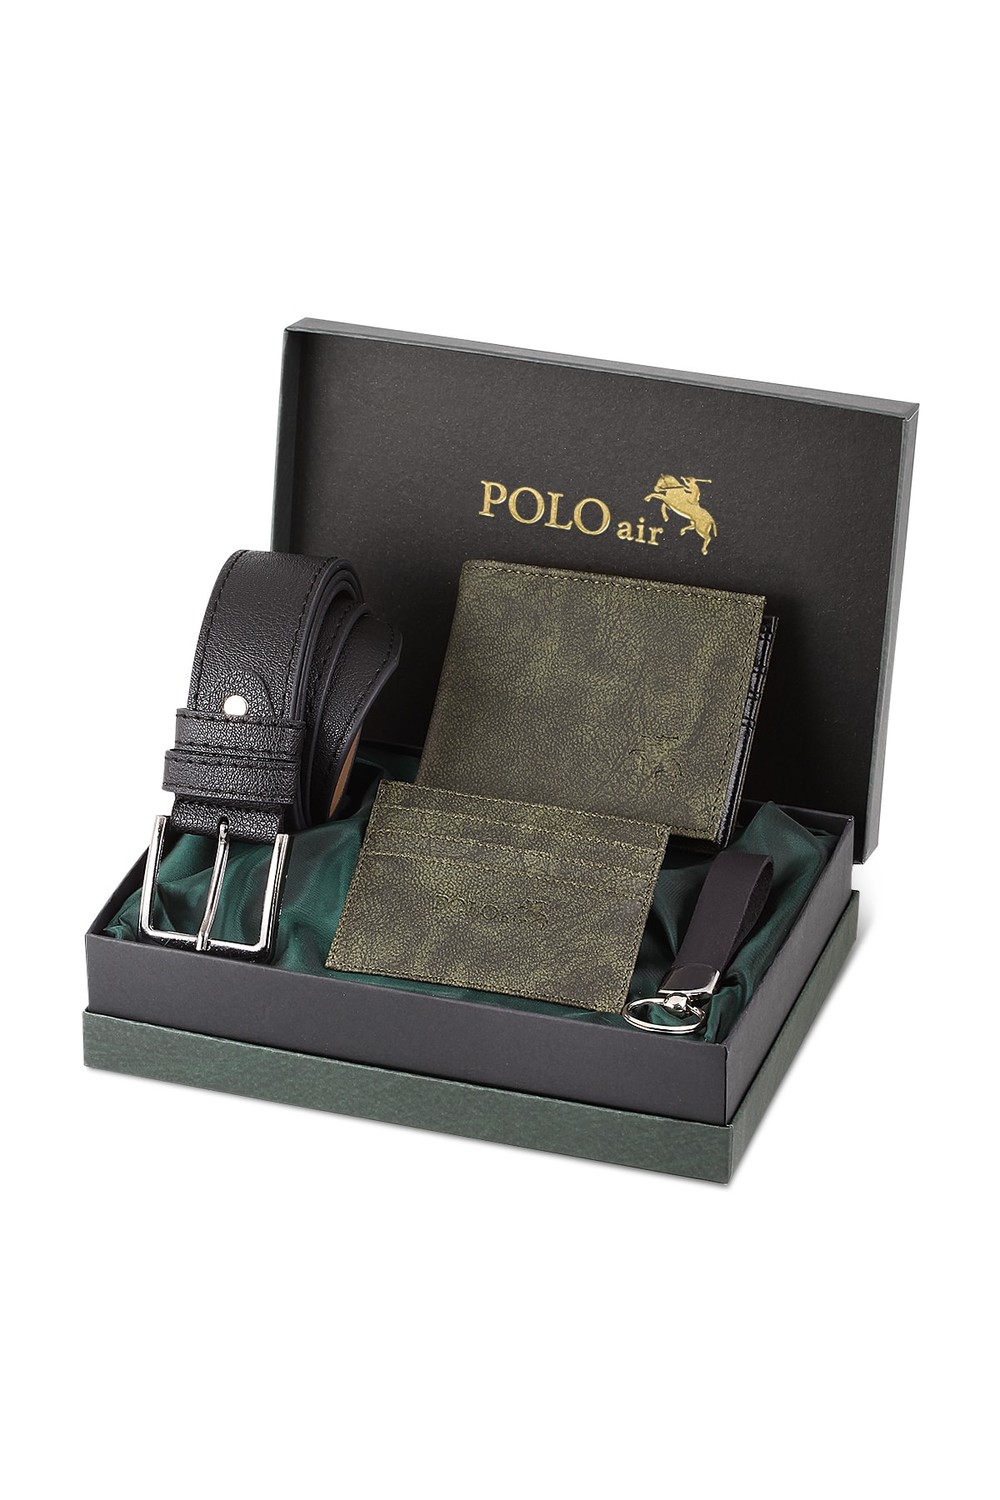 Polo Air Wallet - Green - Plain